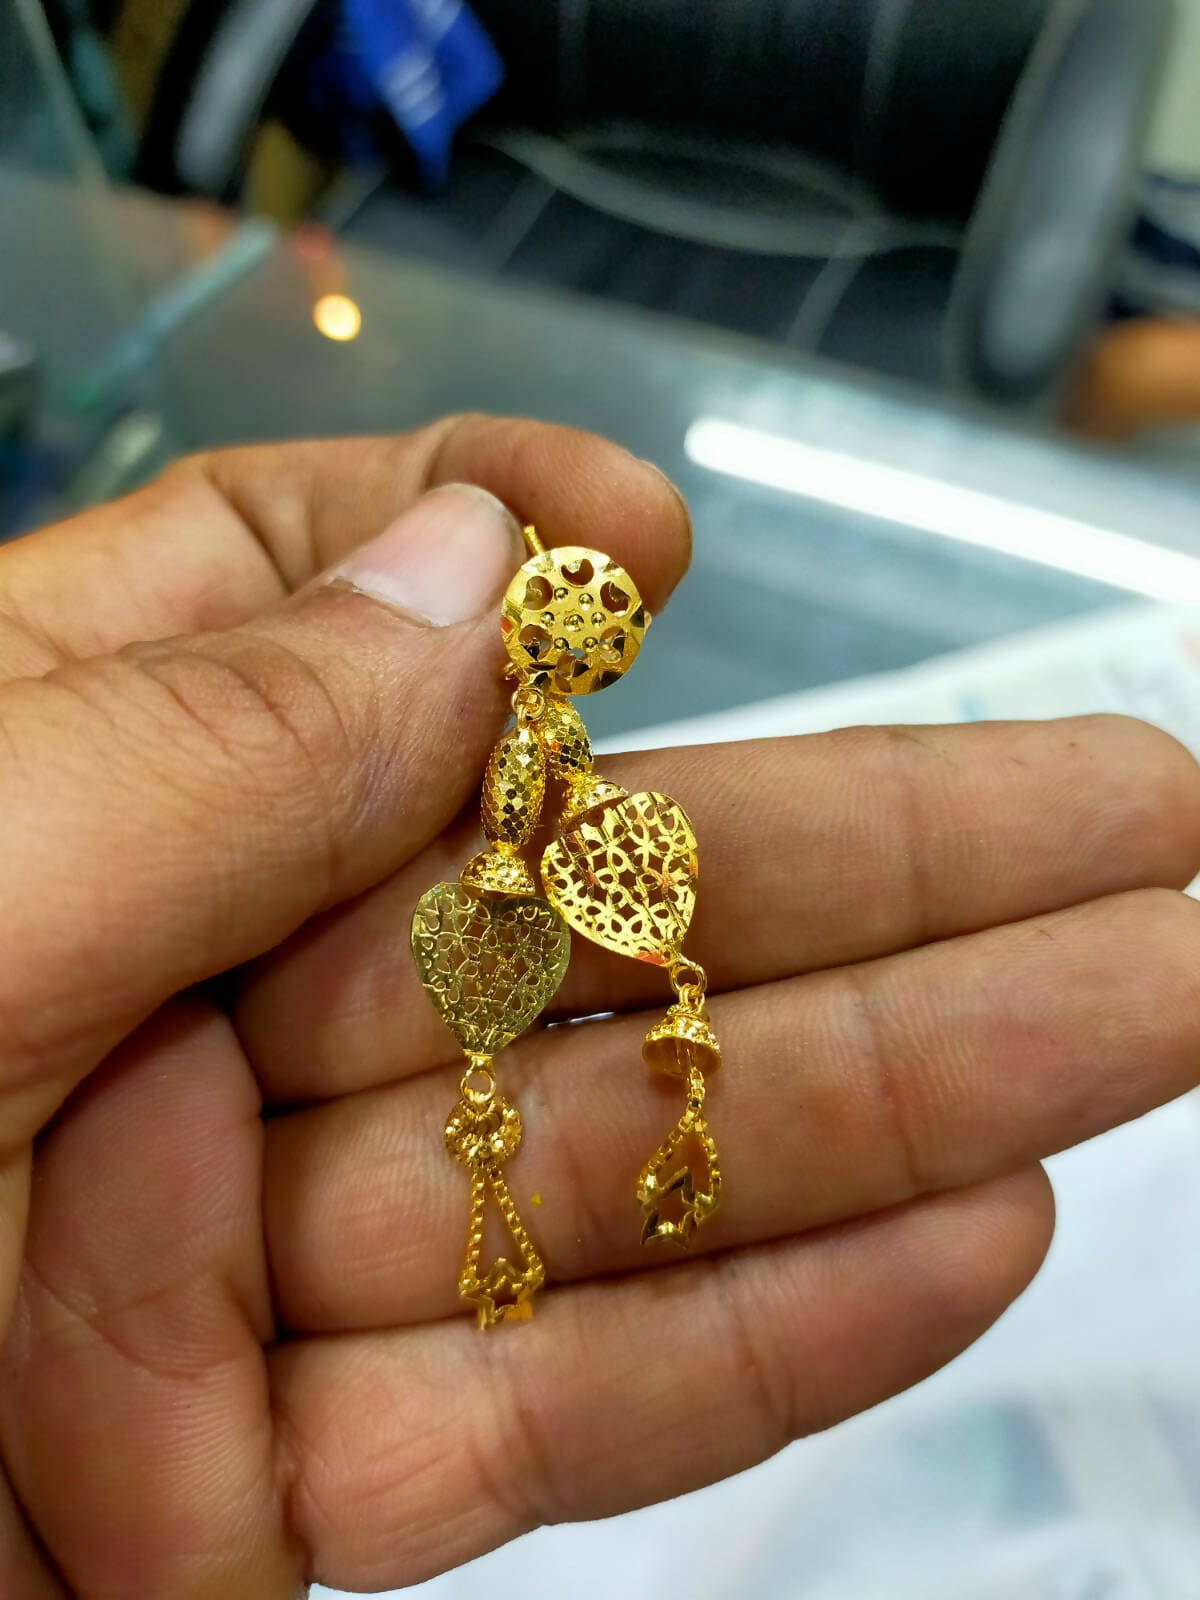 Rajkot Gold Earring Sarafa Bazar India